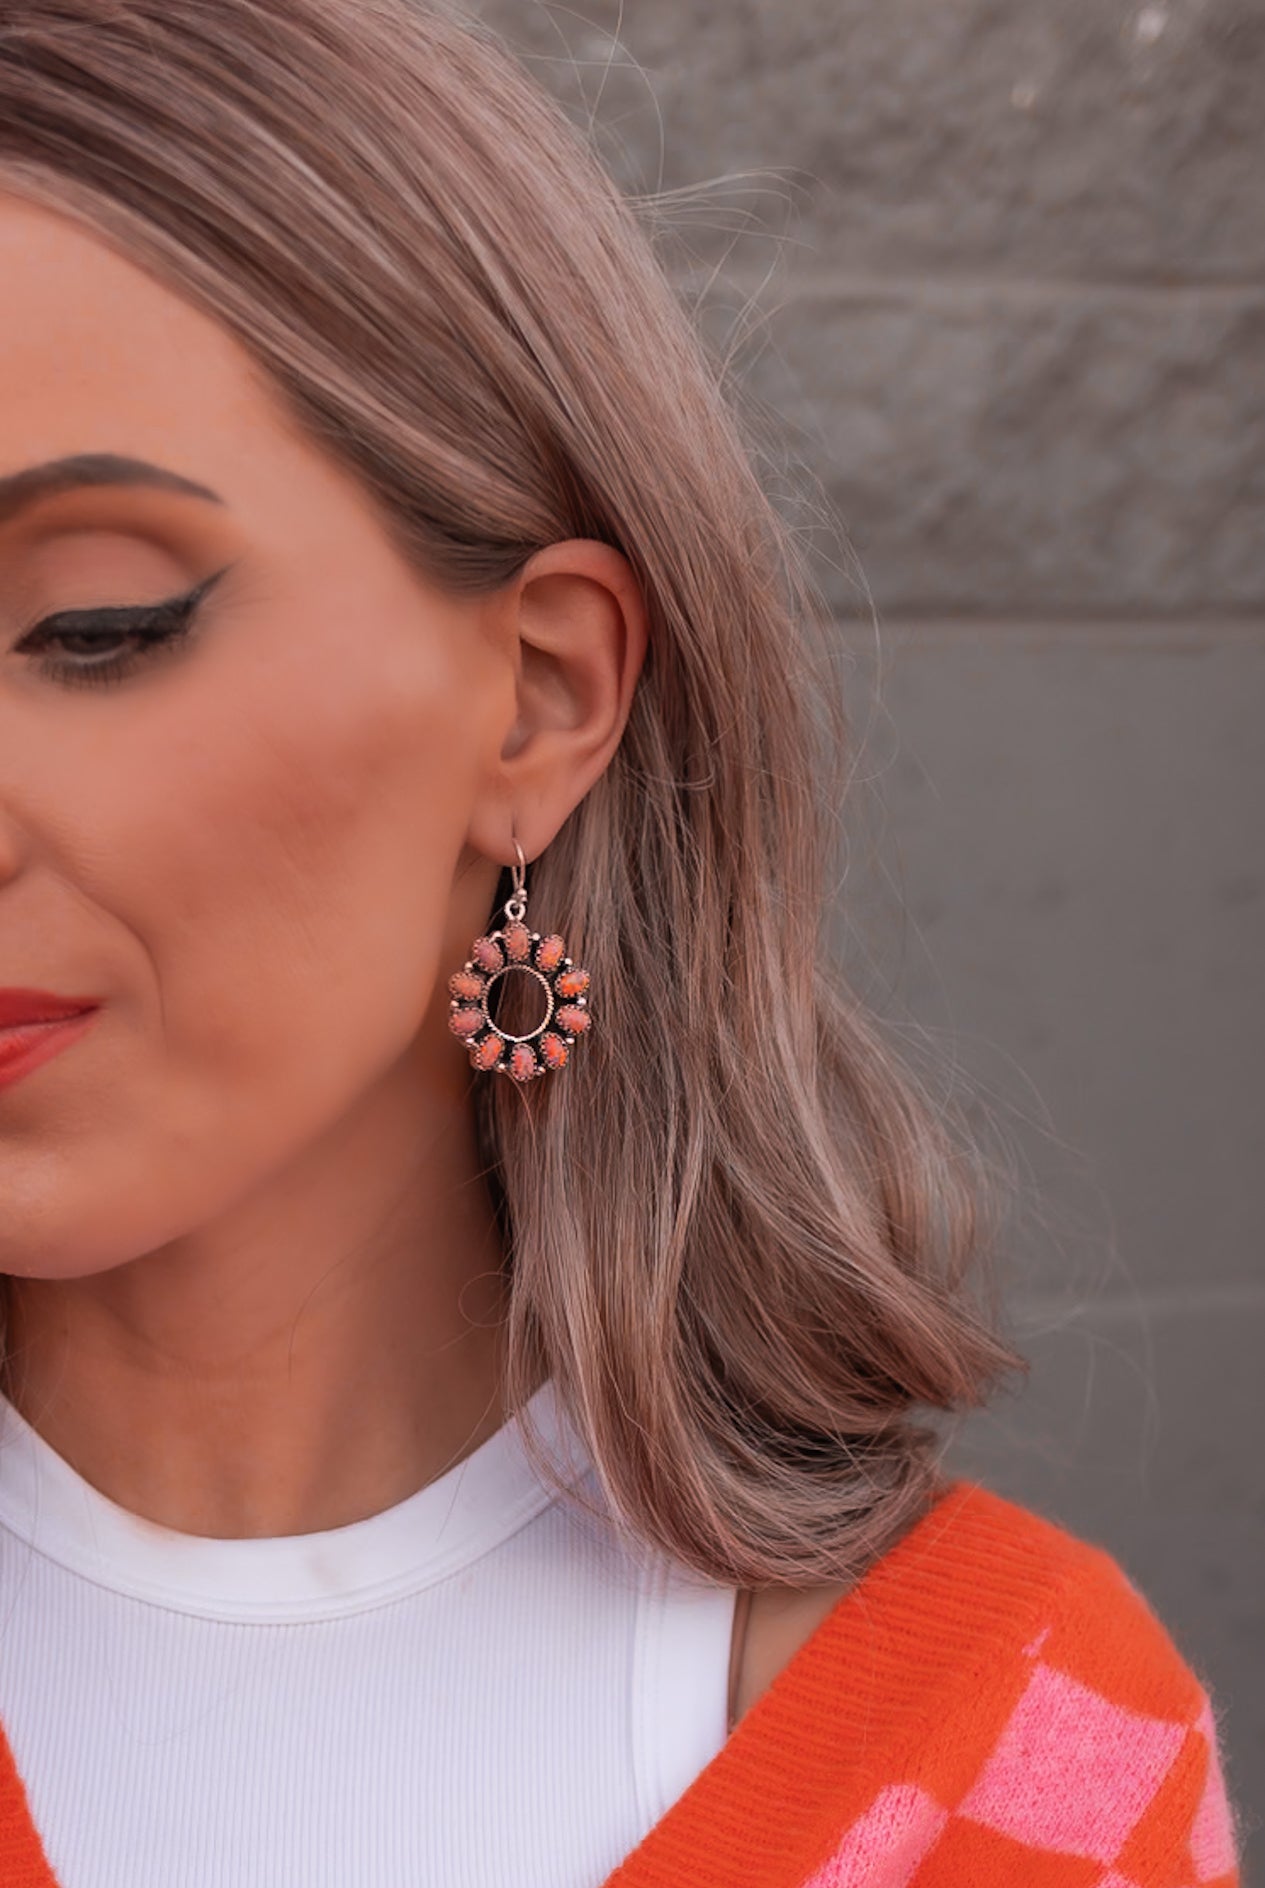 HOLLOW "O" STERLING SILVER EARRINGS-Drop Earrings-Krush Kandy, Women's Online Fashion Boutique Located in Phoenix, Arizona (Scottsdale Area)